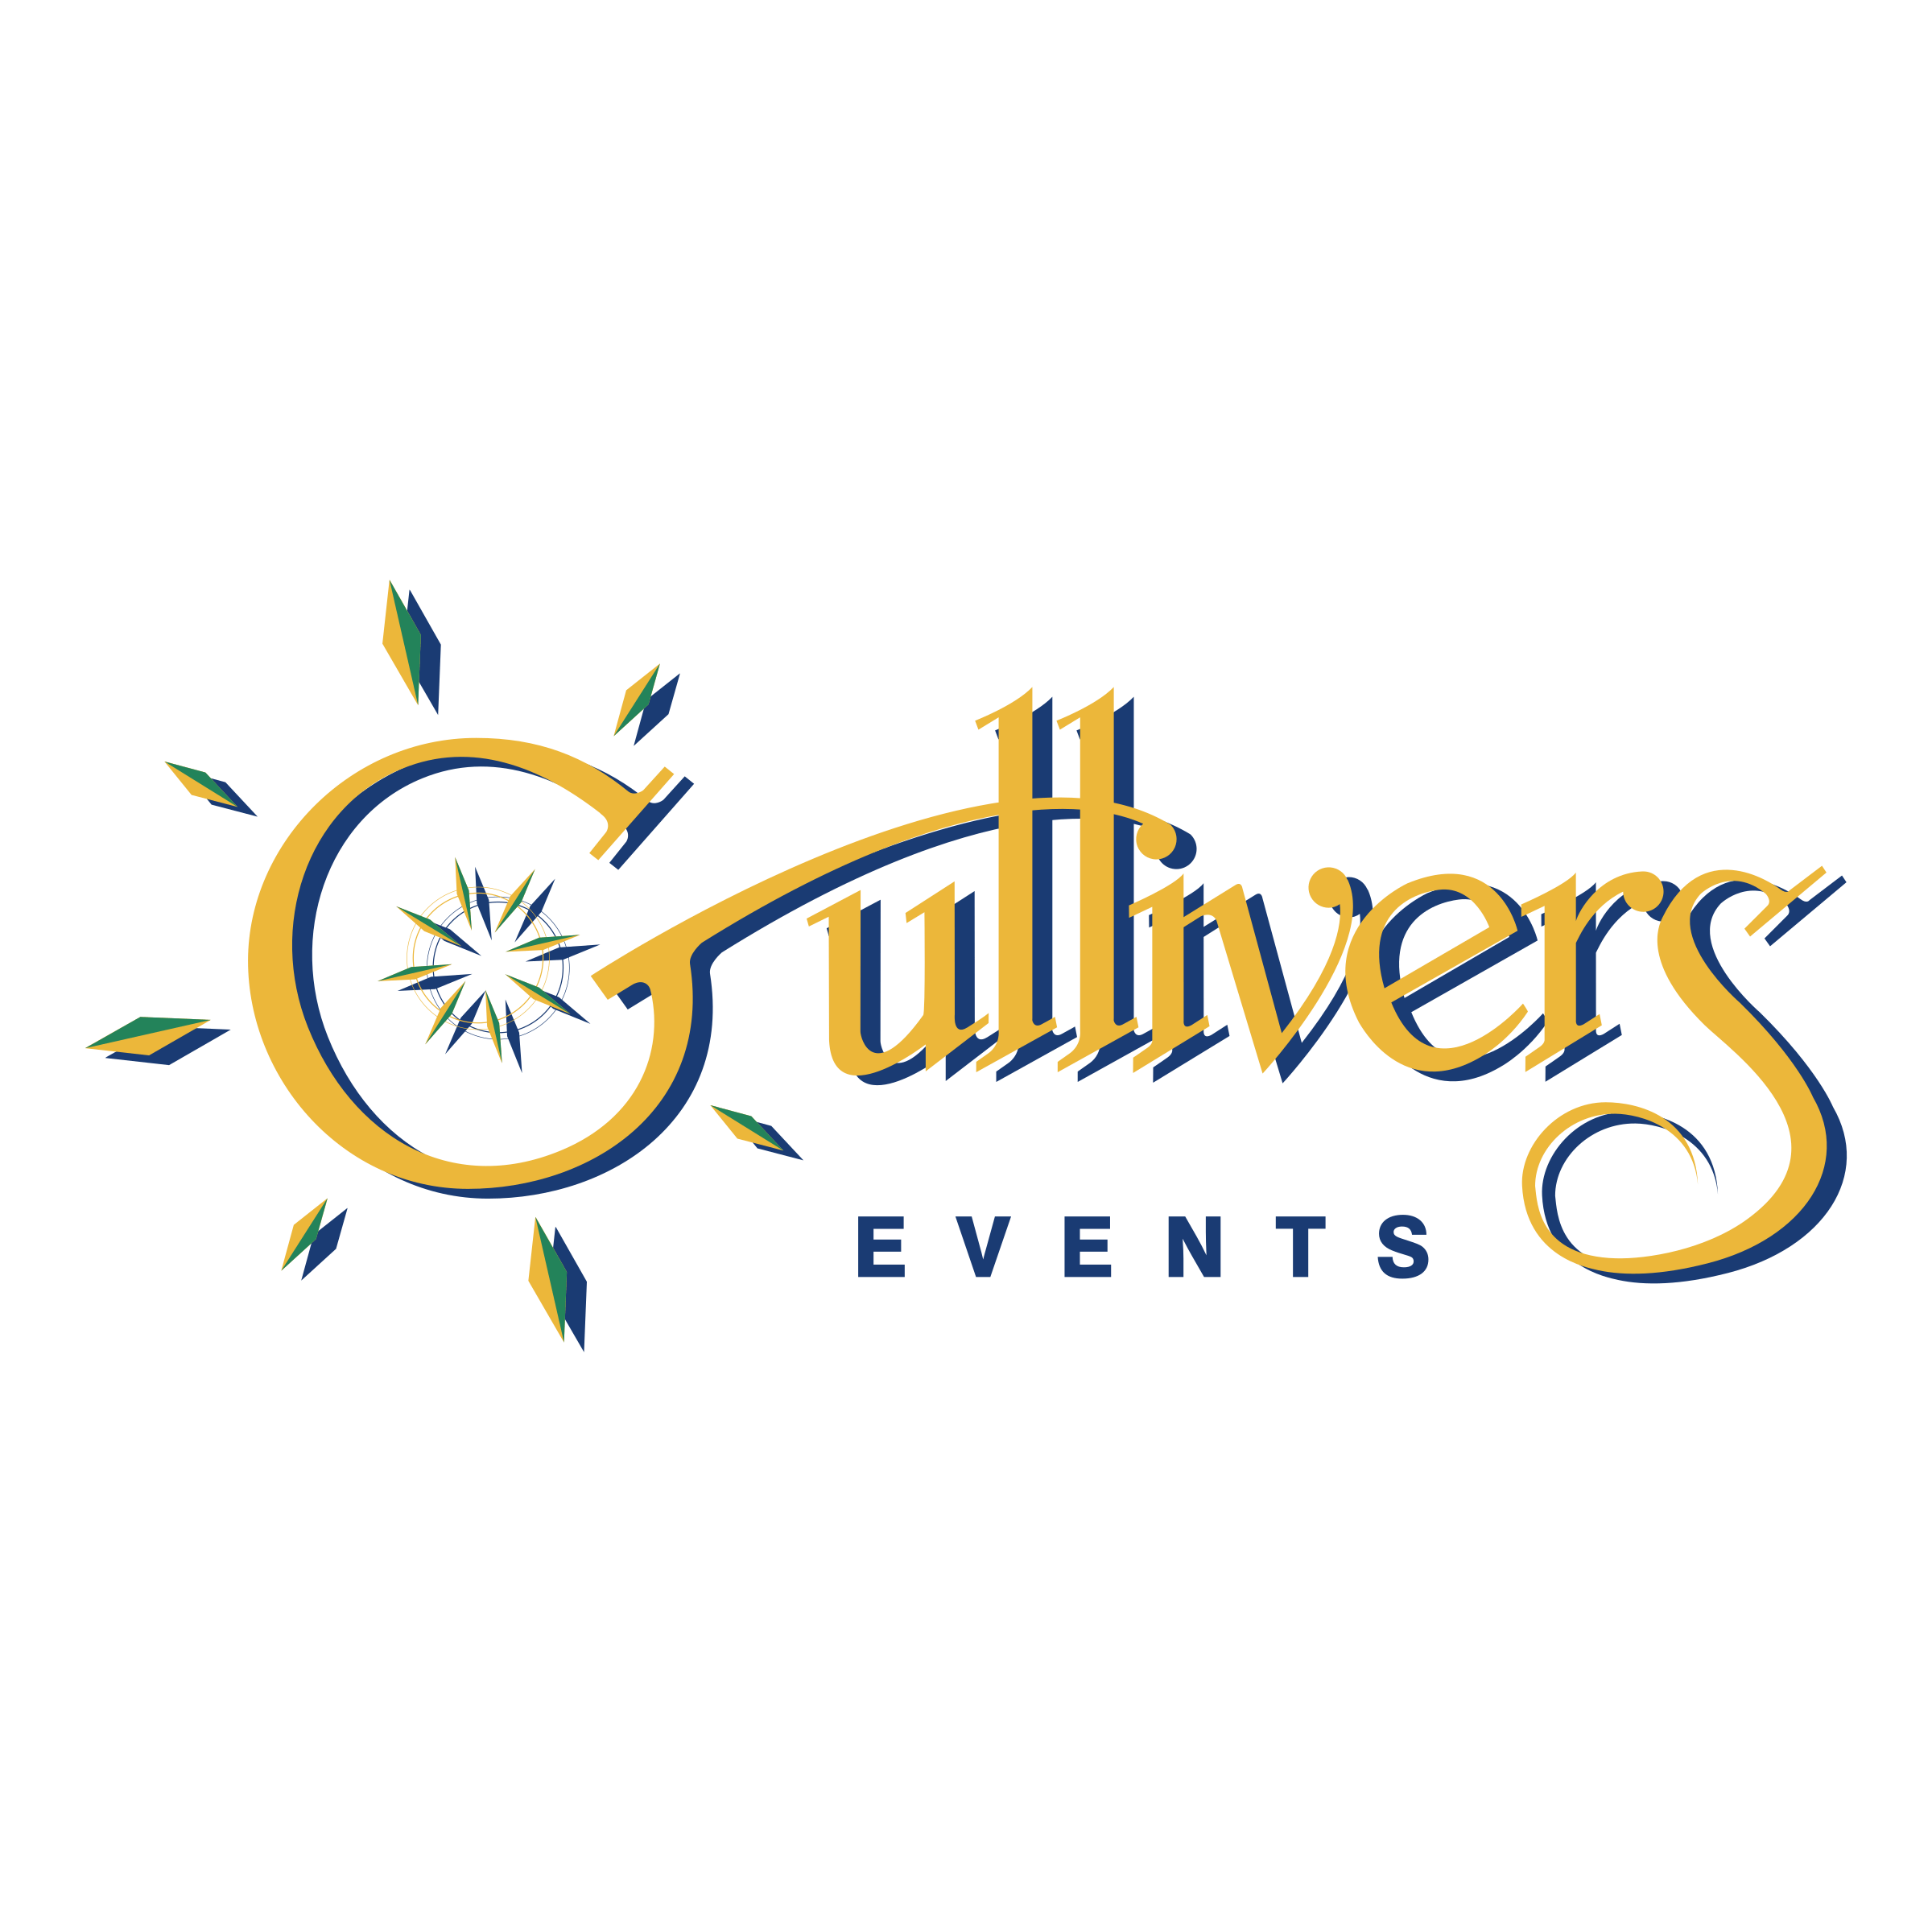 Gulliver's Logo - Gullivers Events Logo PNG Transparent & SVG Vector